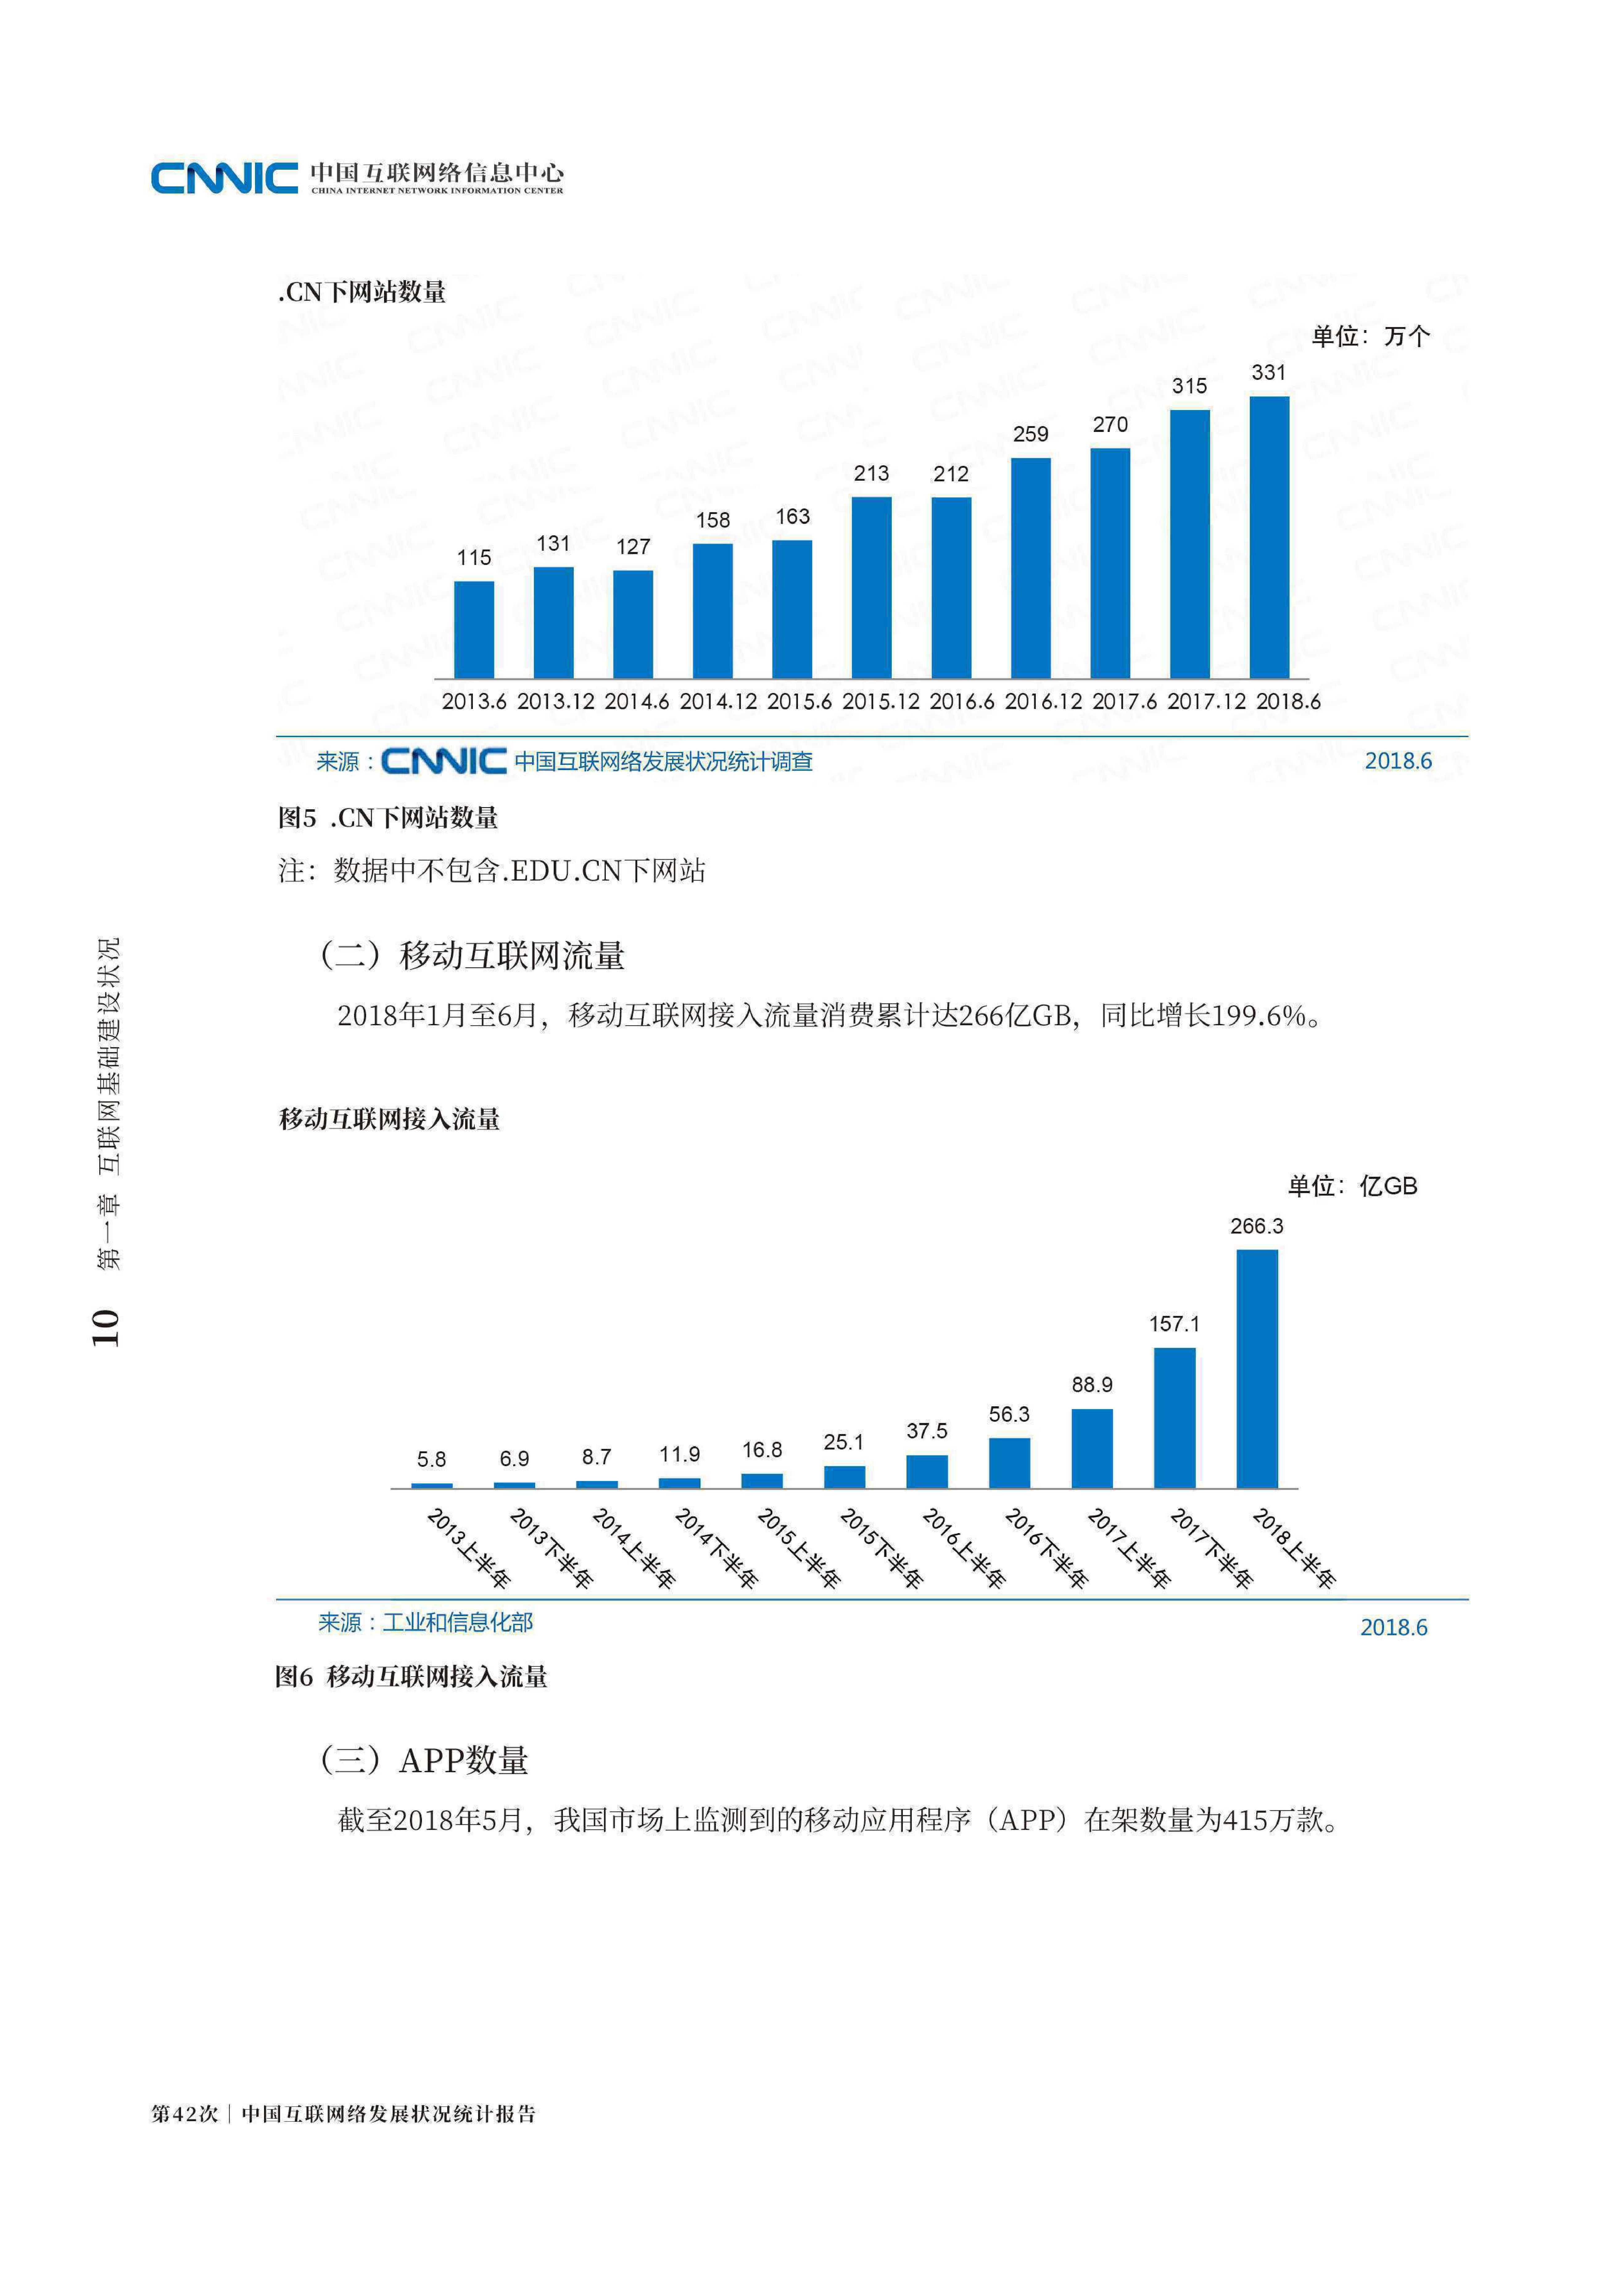 《中国互联网发展报告（2021）》发布 截至2020年底我国网民规模为9.89亿人 移动互联网用户超16亿 - 封面新闻